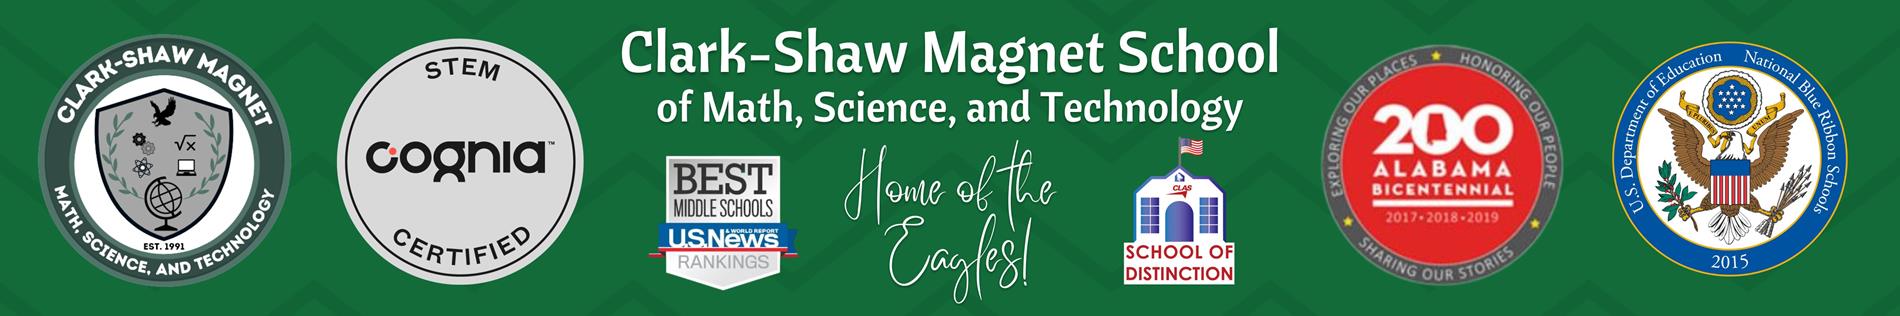 Website banner Clark-Shaw Magnet School